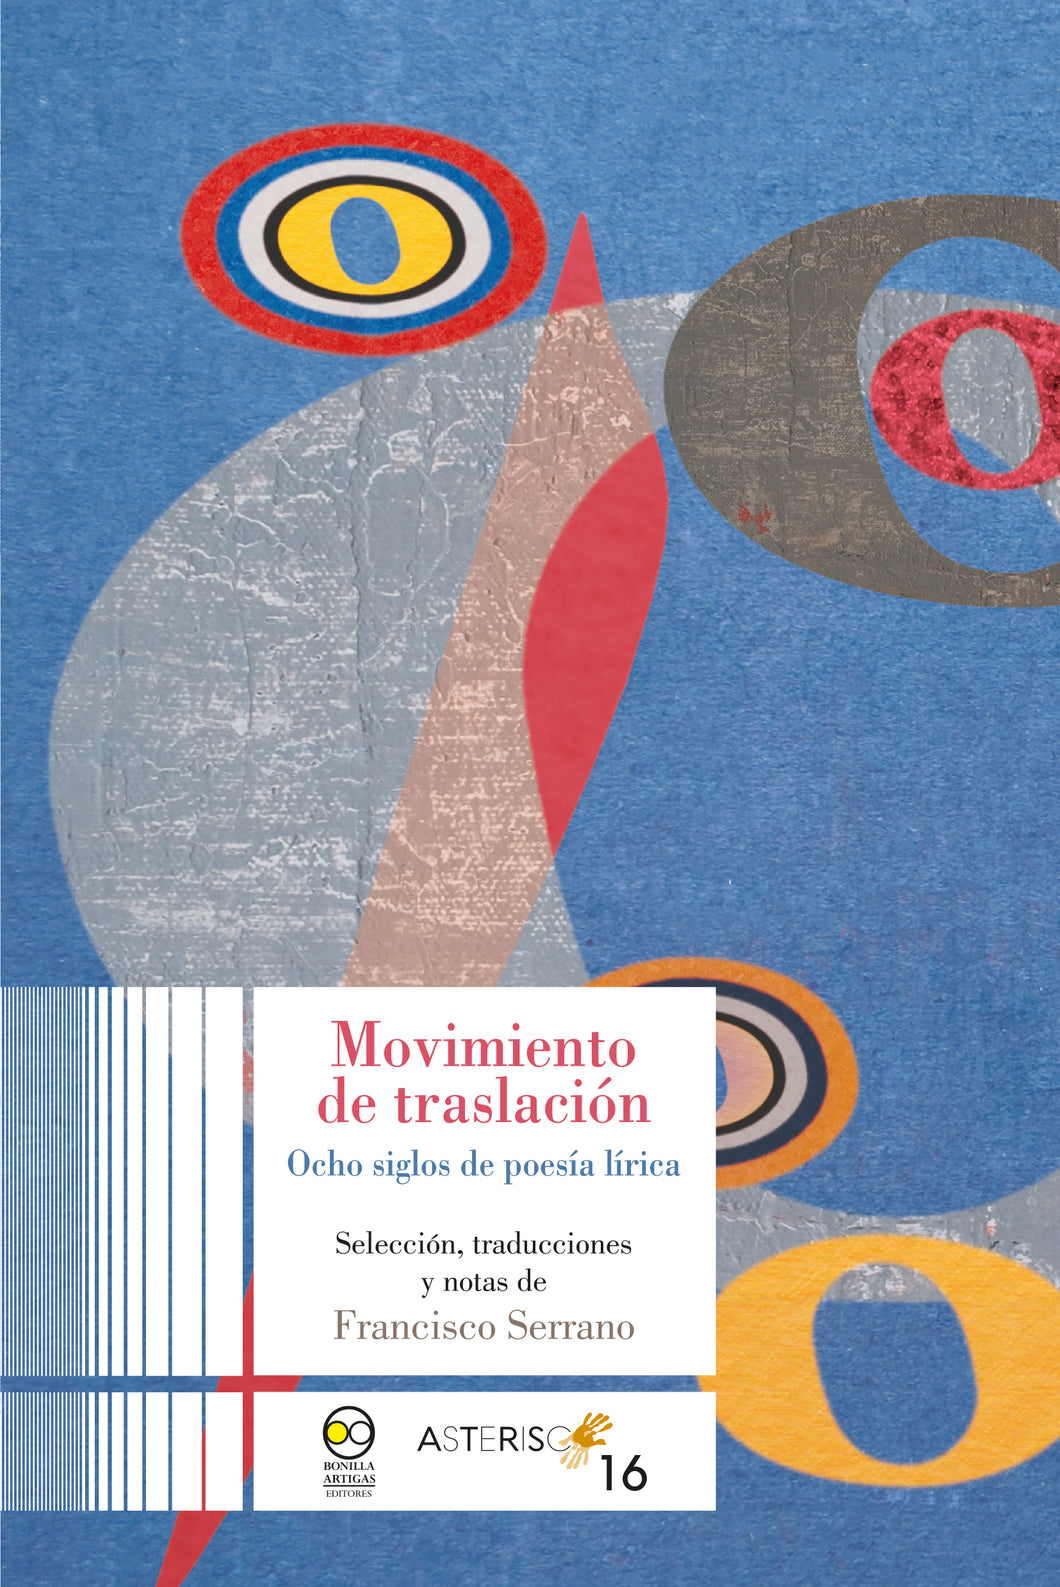 Movimiento de traslación: Ocho siglos de poesía lírica. Selección, traducciones y notas de Francisco Serrano